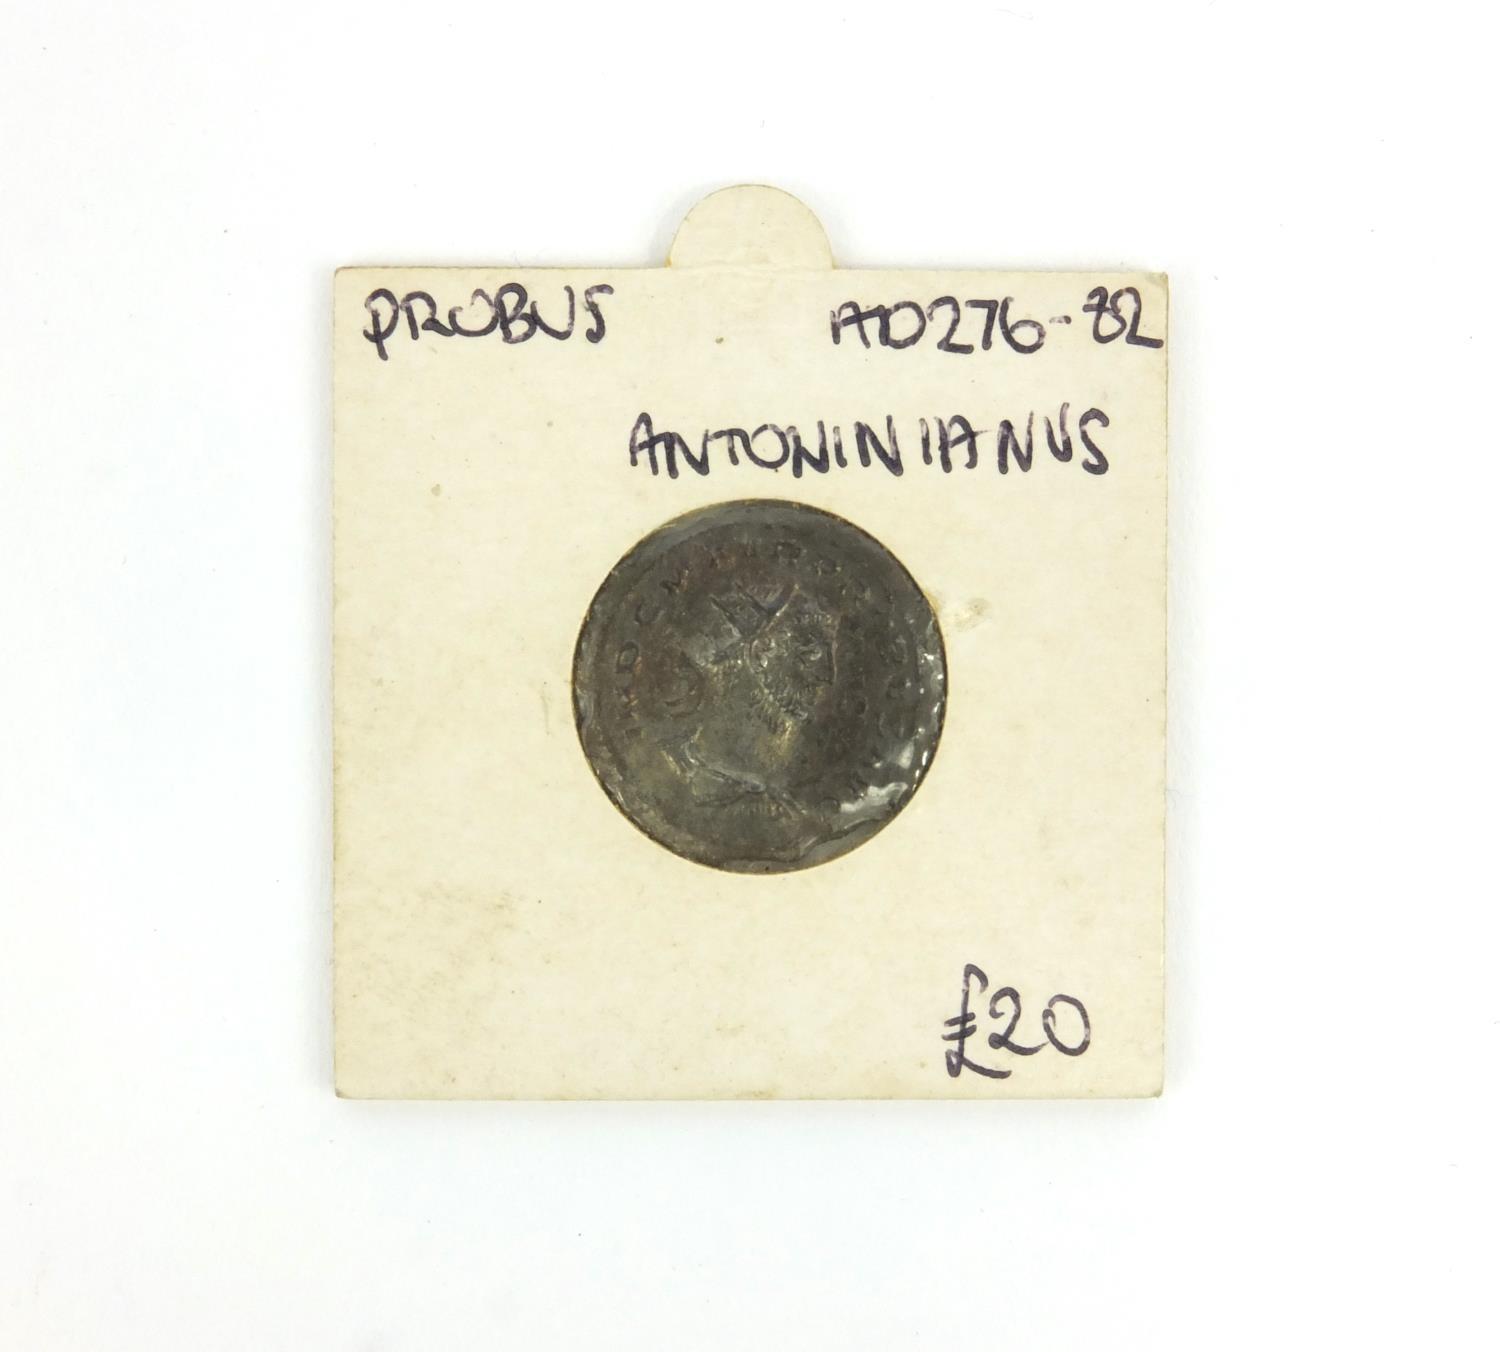 Antoninianus Probus AD276-82 Roman coin, 2.5cm diameter